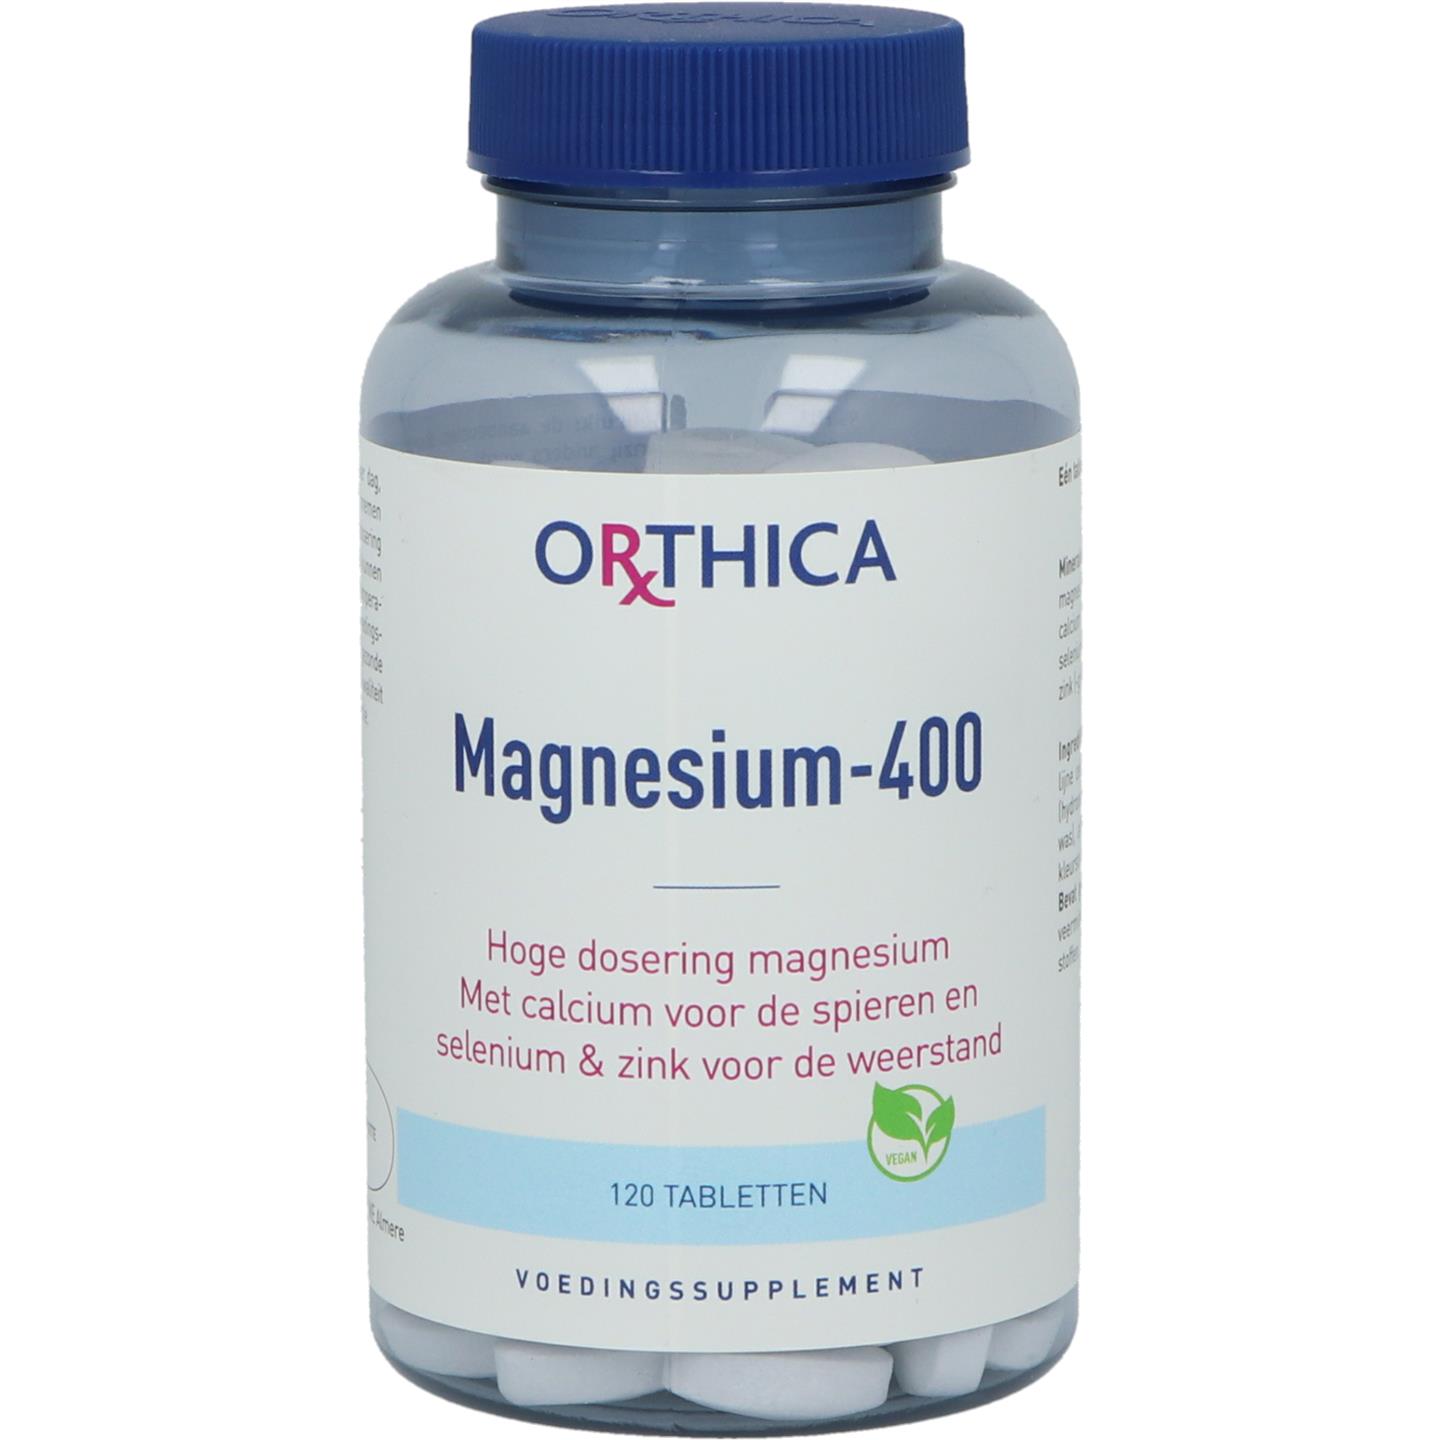 Magnesium-400